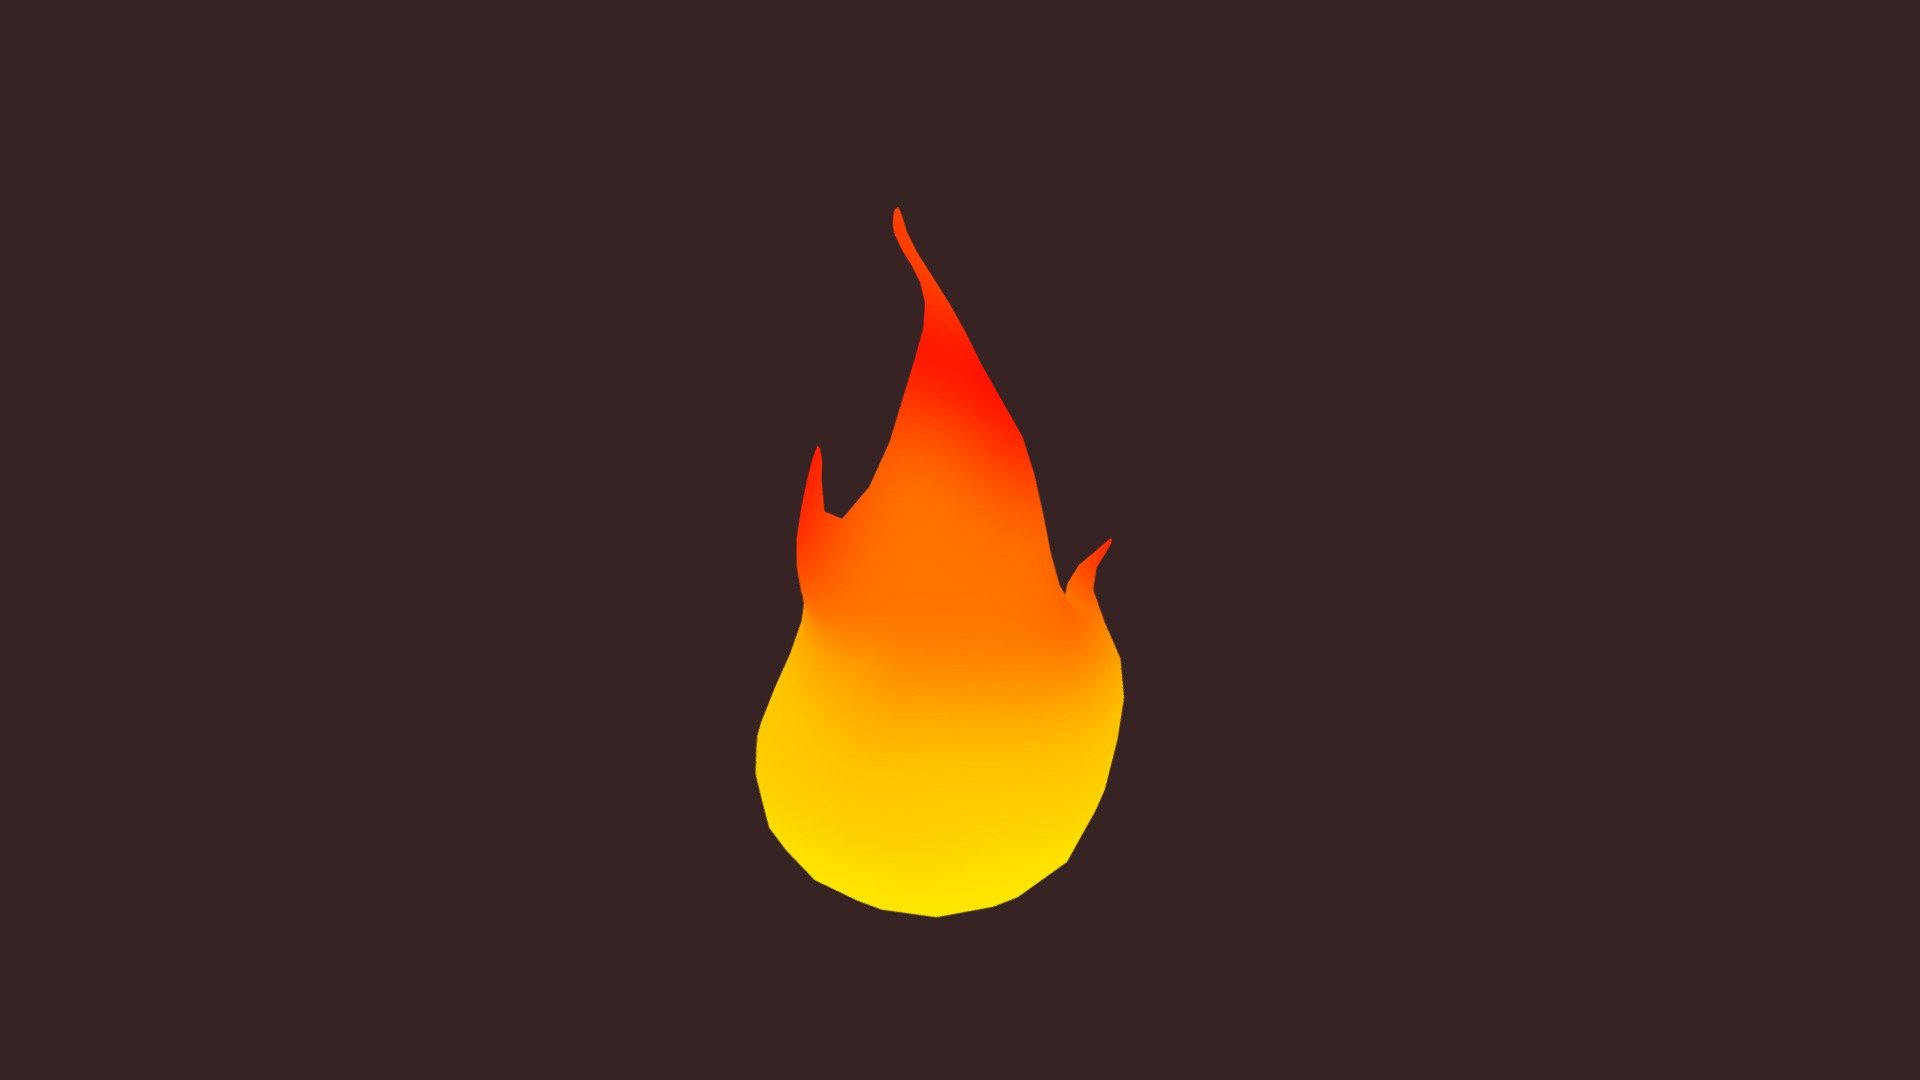 fire blendshape loop - fire - Download Free 3D model by Edgar_koh 3d model